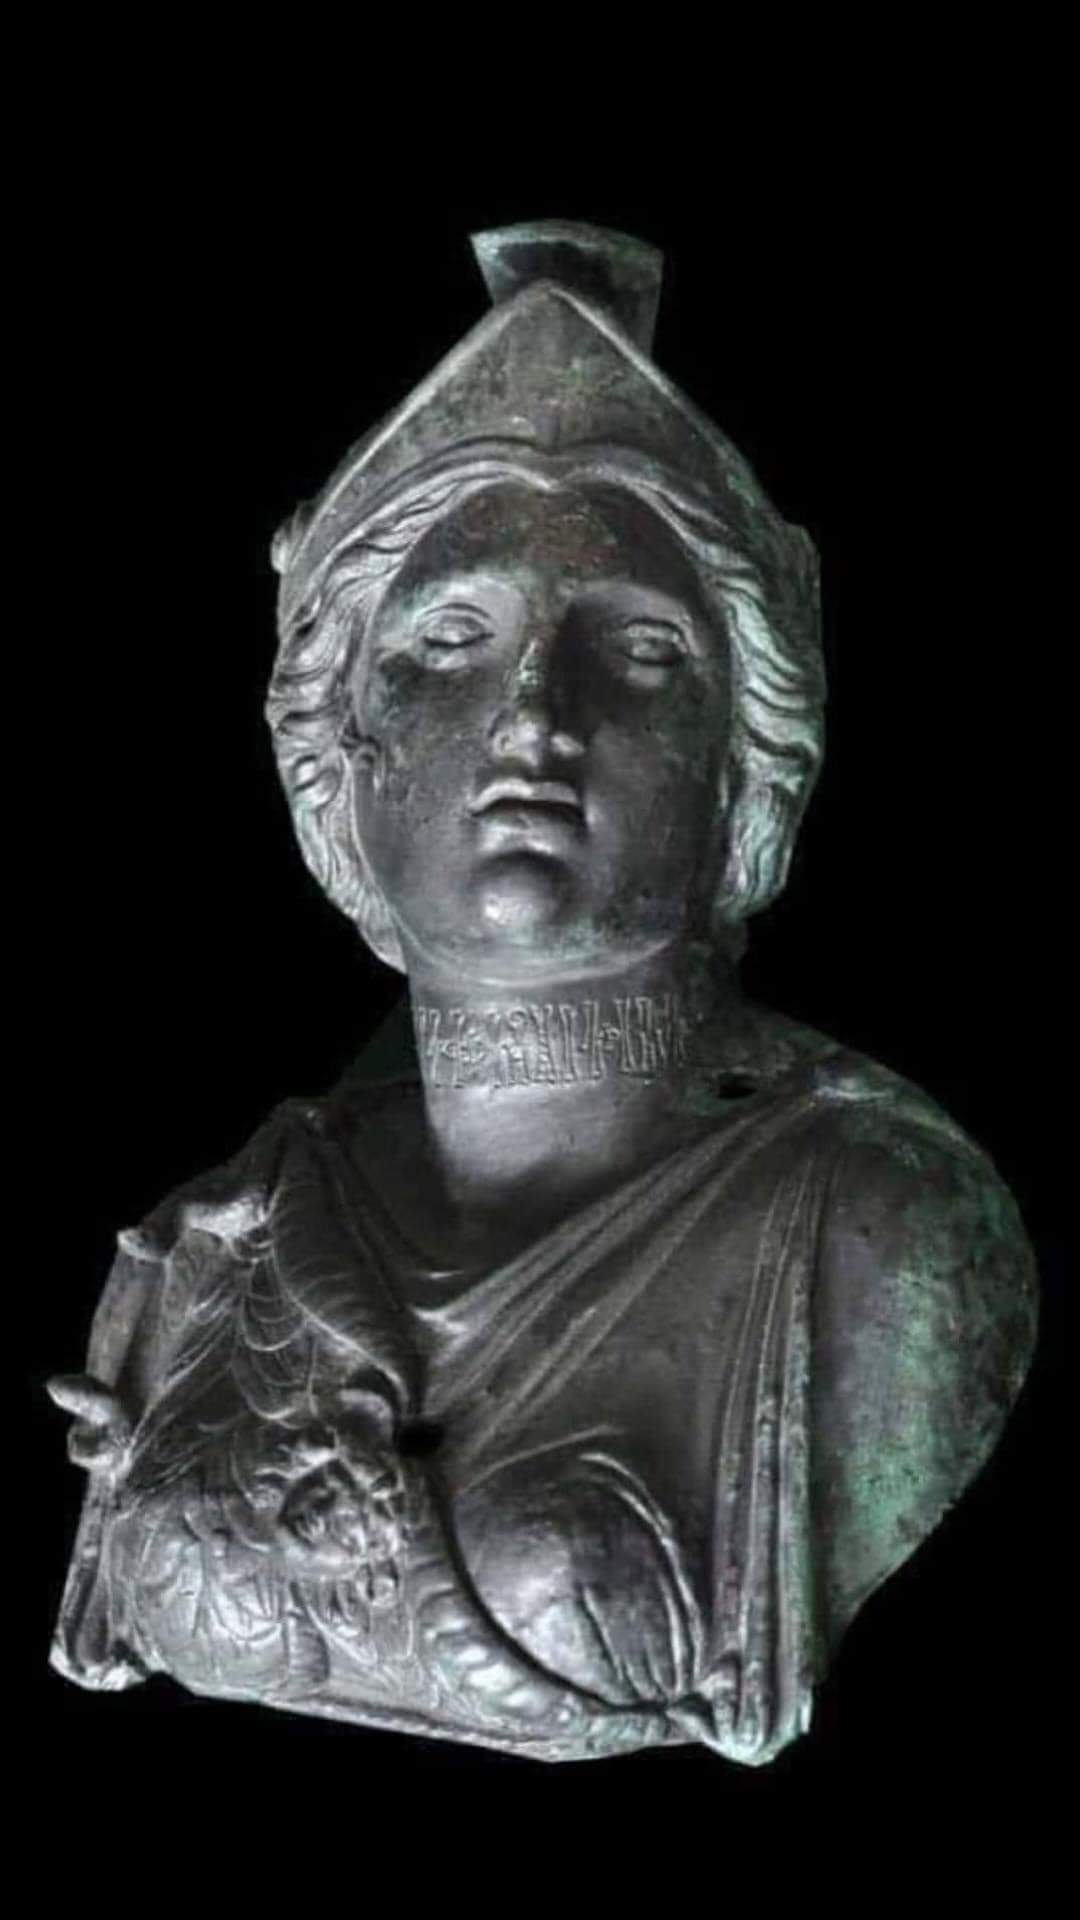 تمثال نادين ذي صدقن في إب الذي عثر عليه عام 2001 (تقرير البعثة اليمنية - الألمانية)